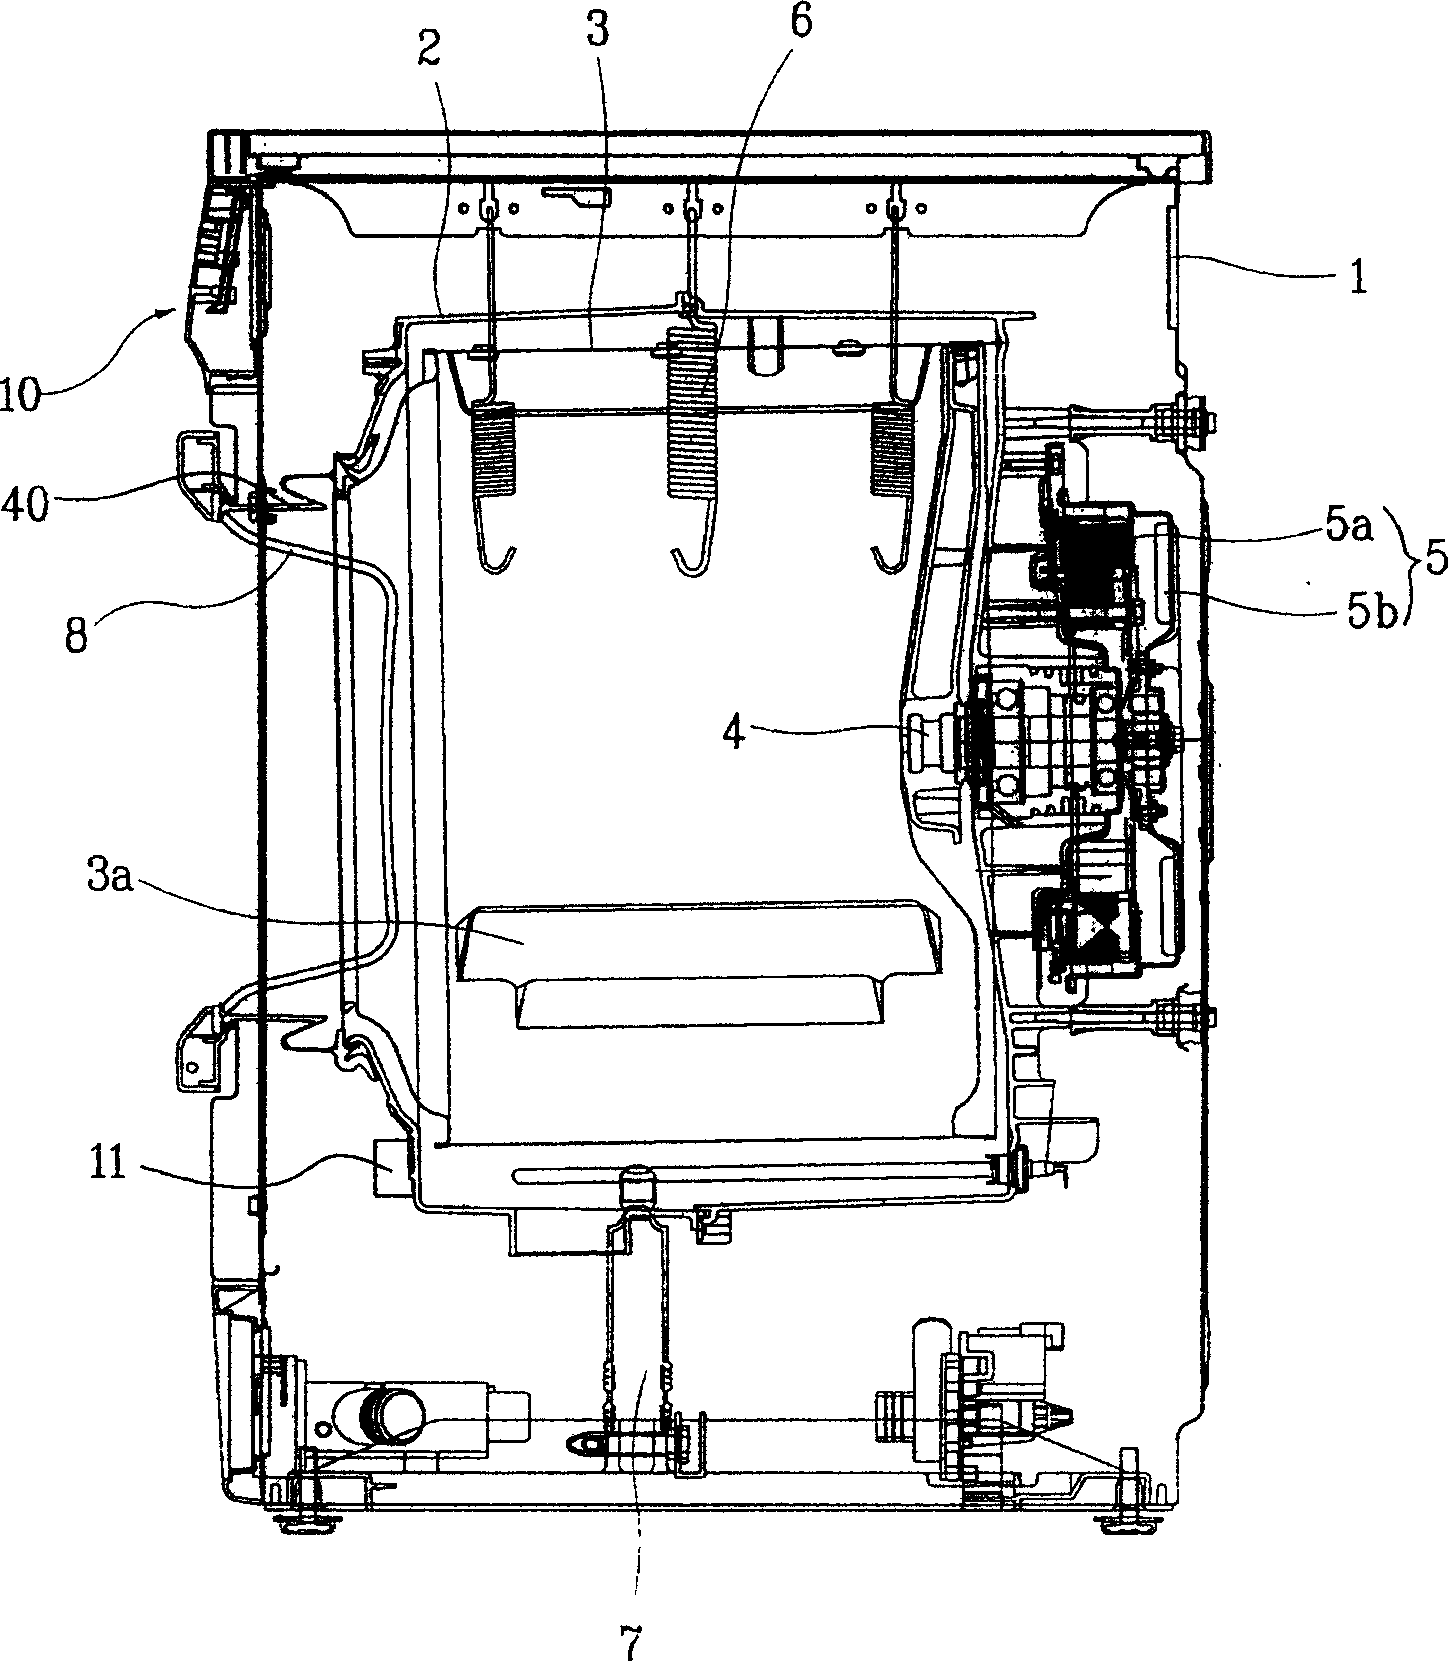 Sealing pad structure of drum washing machine